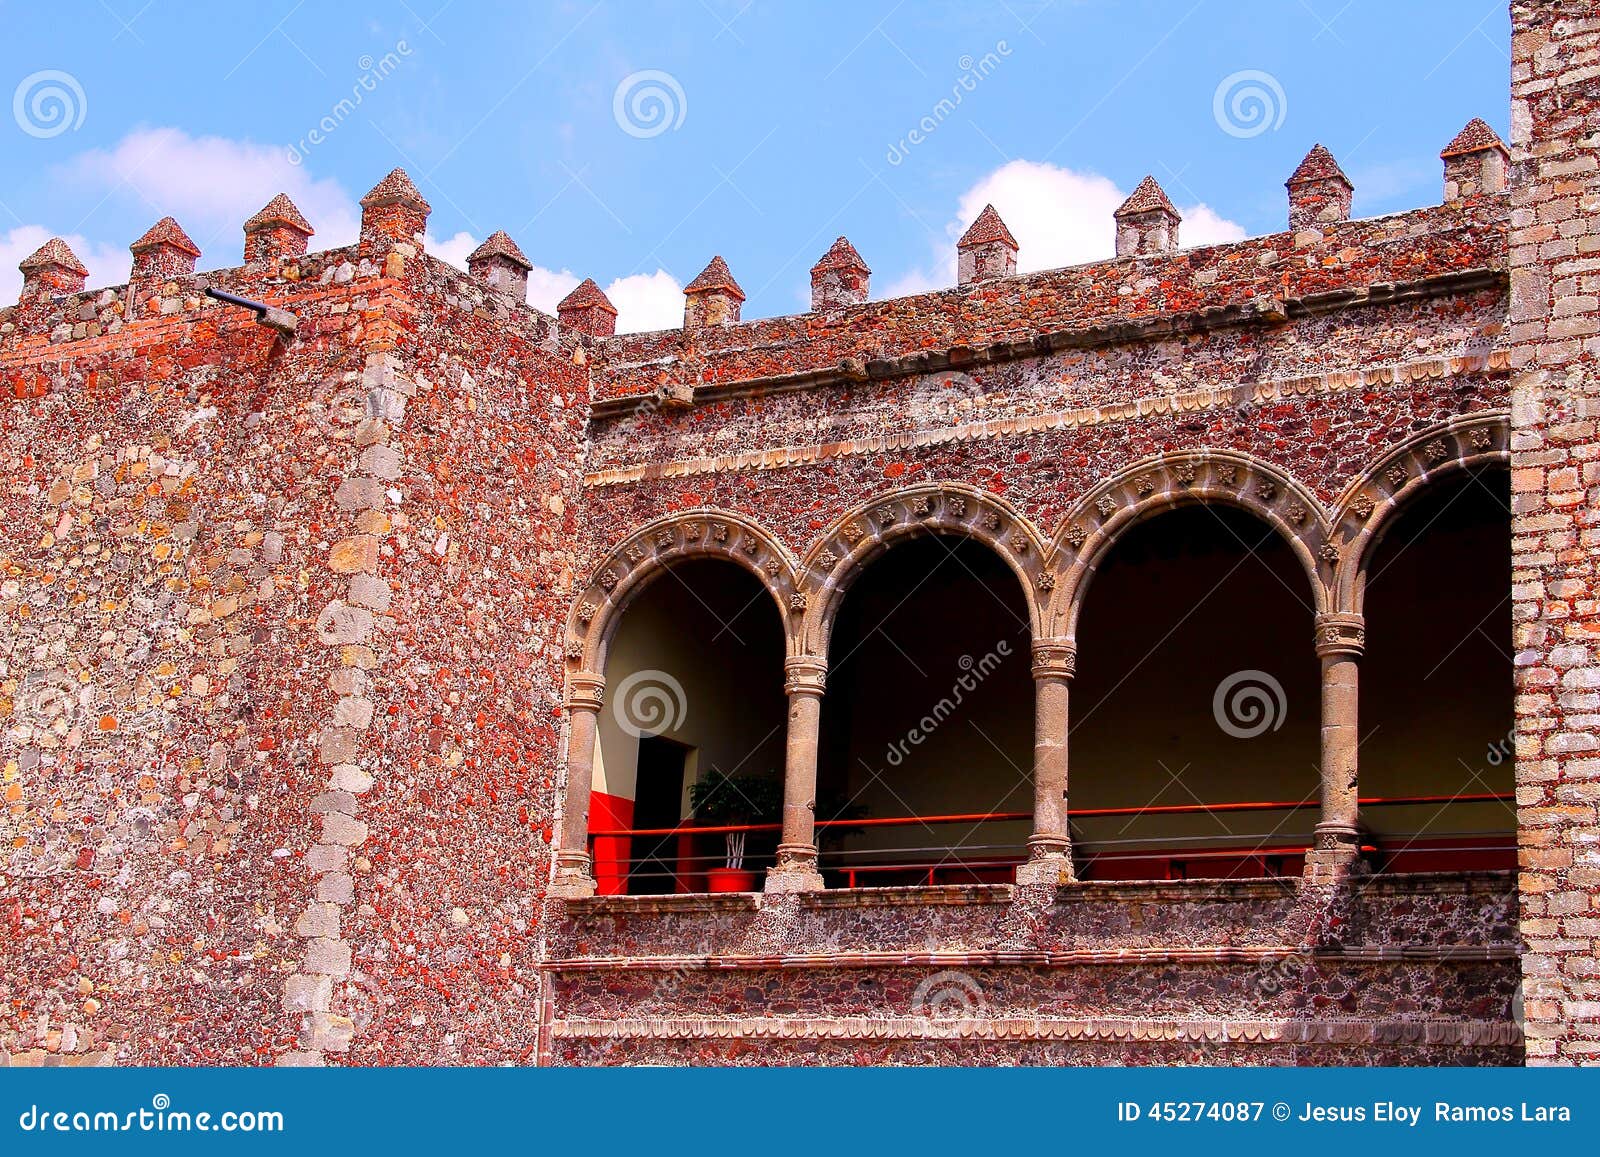 cortes palace in cuernavaca, morelos, mexico iii